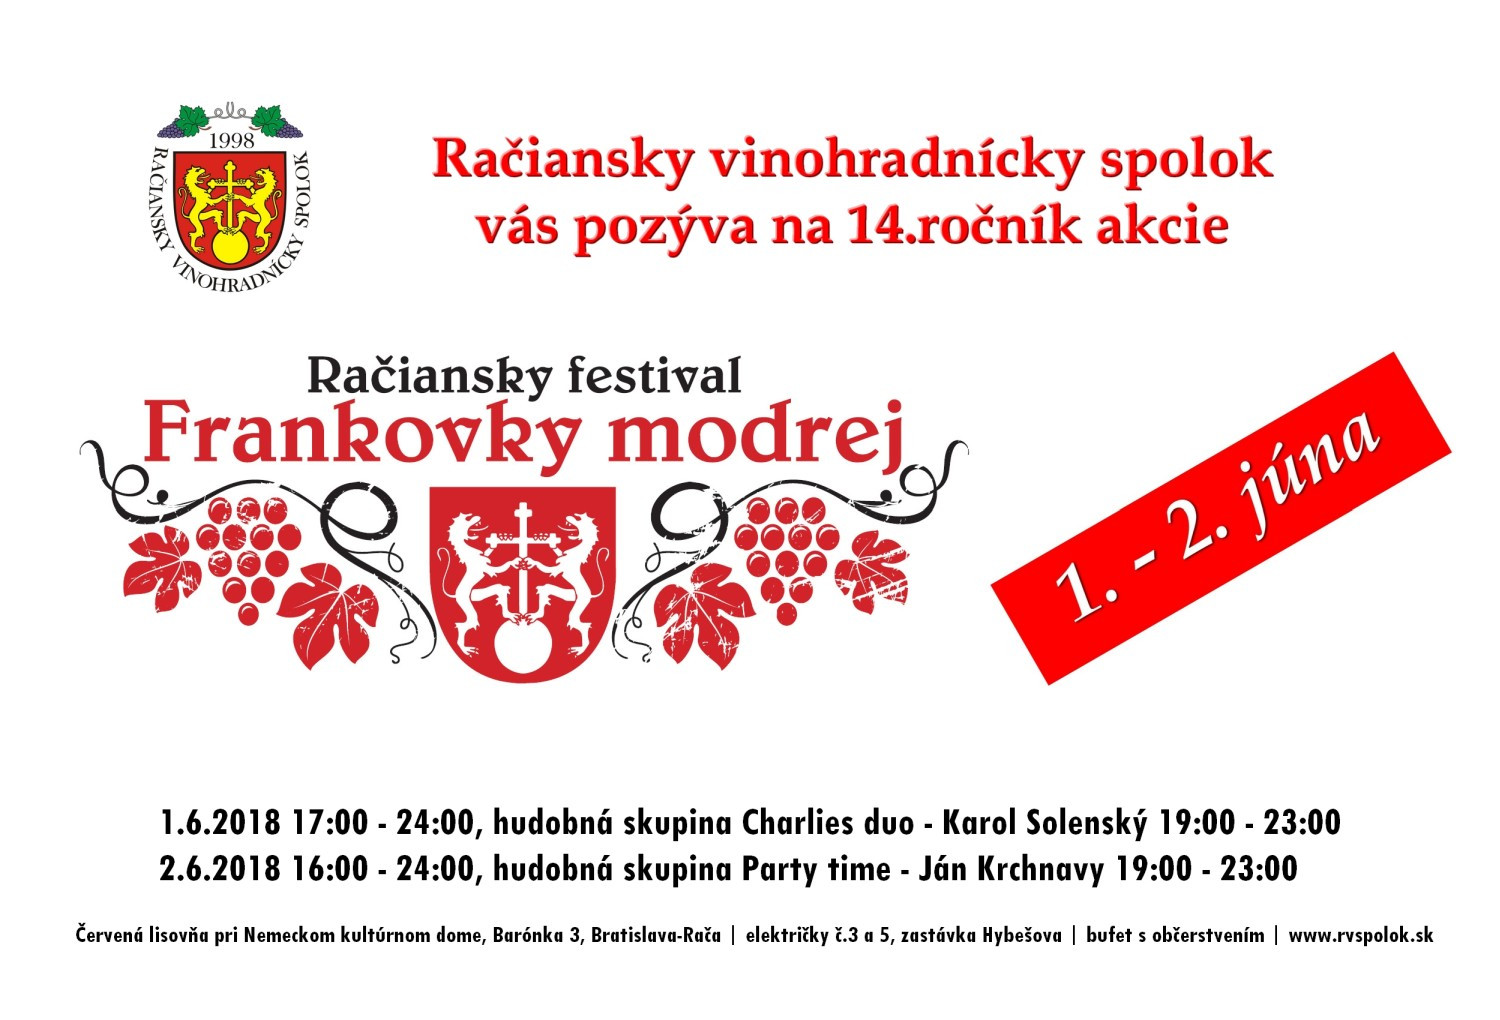 Račiansky festival Frankovky modrej (1. a 2.6.2018)